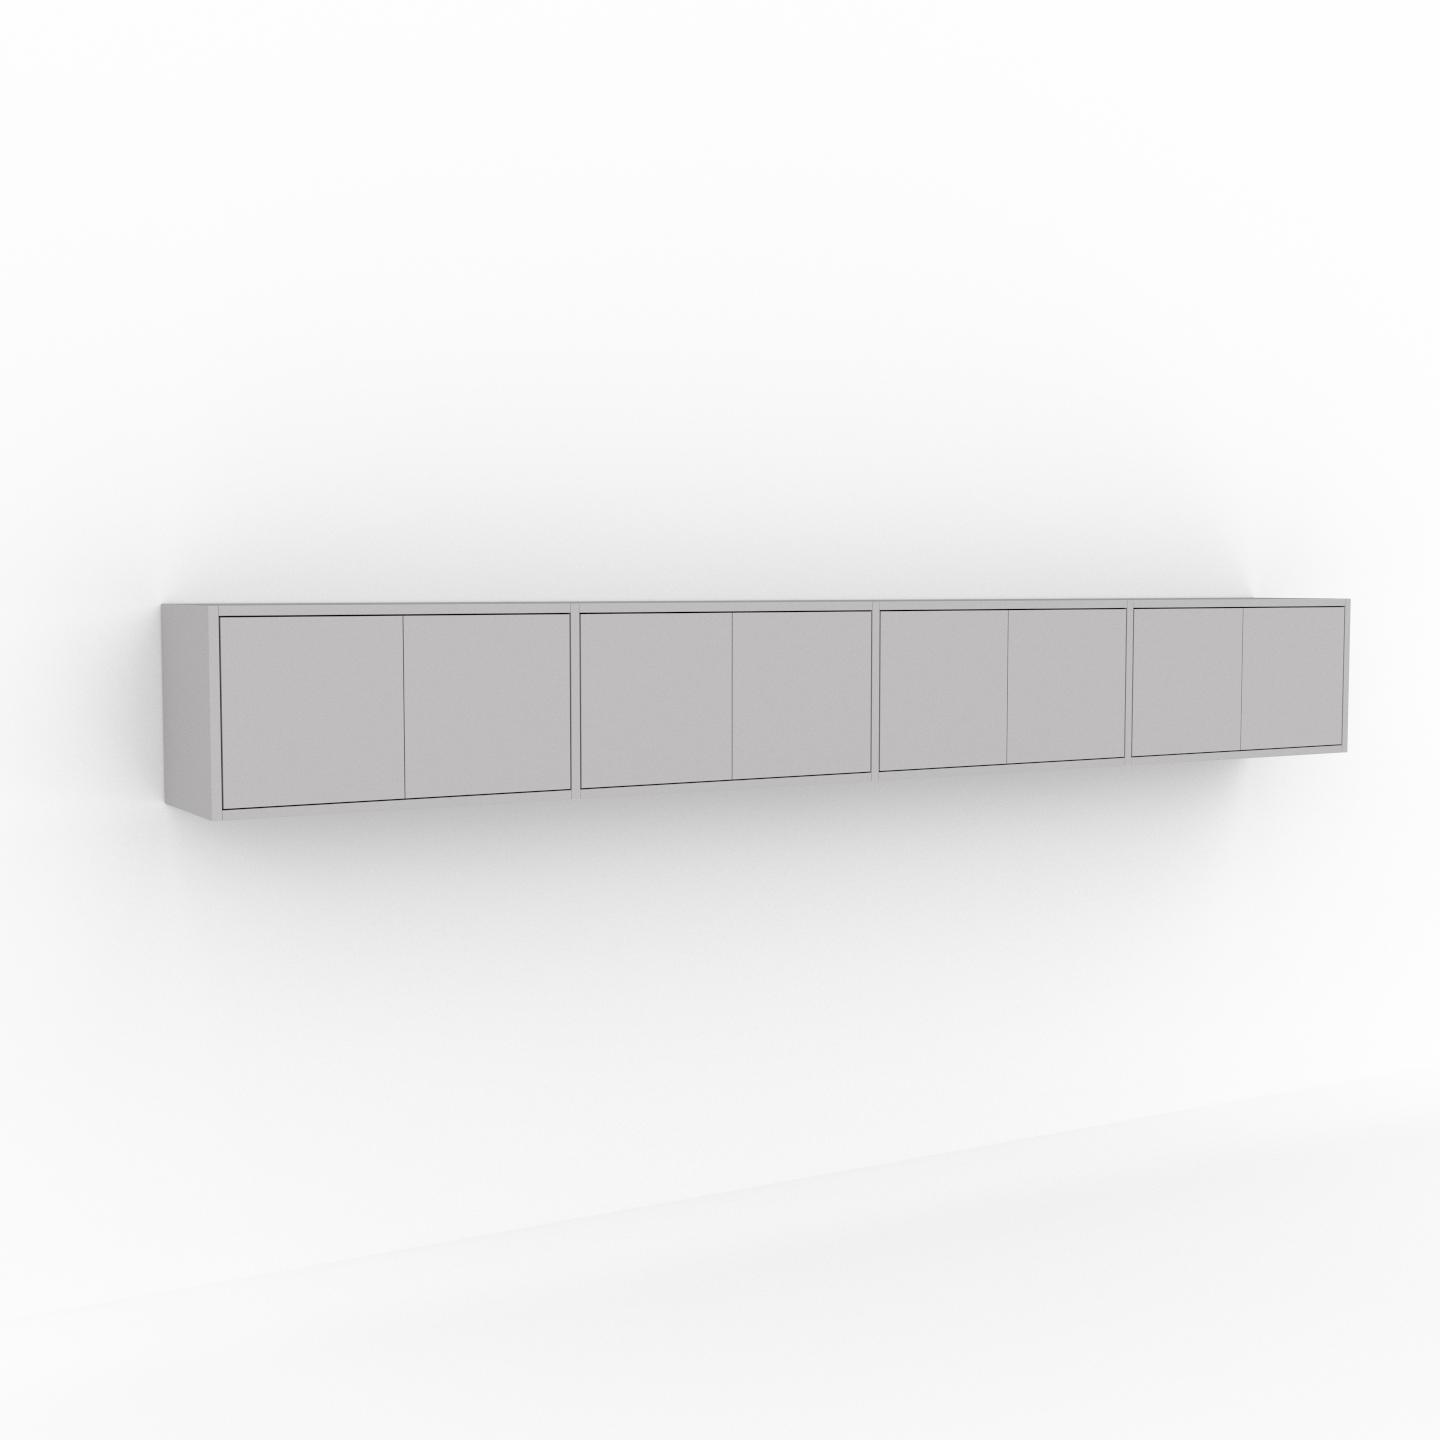 MYCS Hängeschrank Hellgrau - Moderner Wandschrank: Türen in Hellgrau - 301 x 41 x 35 cm, konfigurierbar